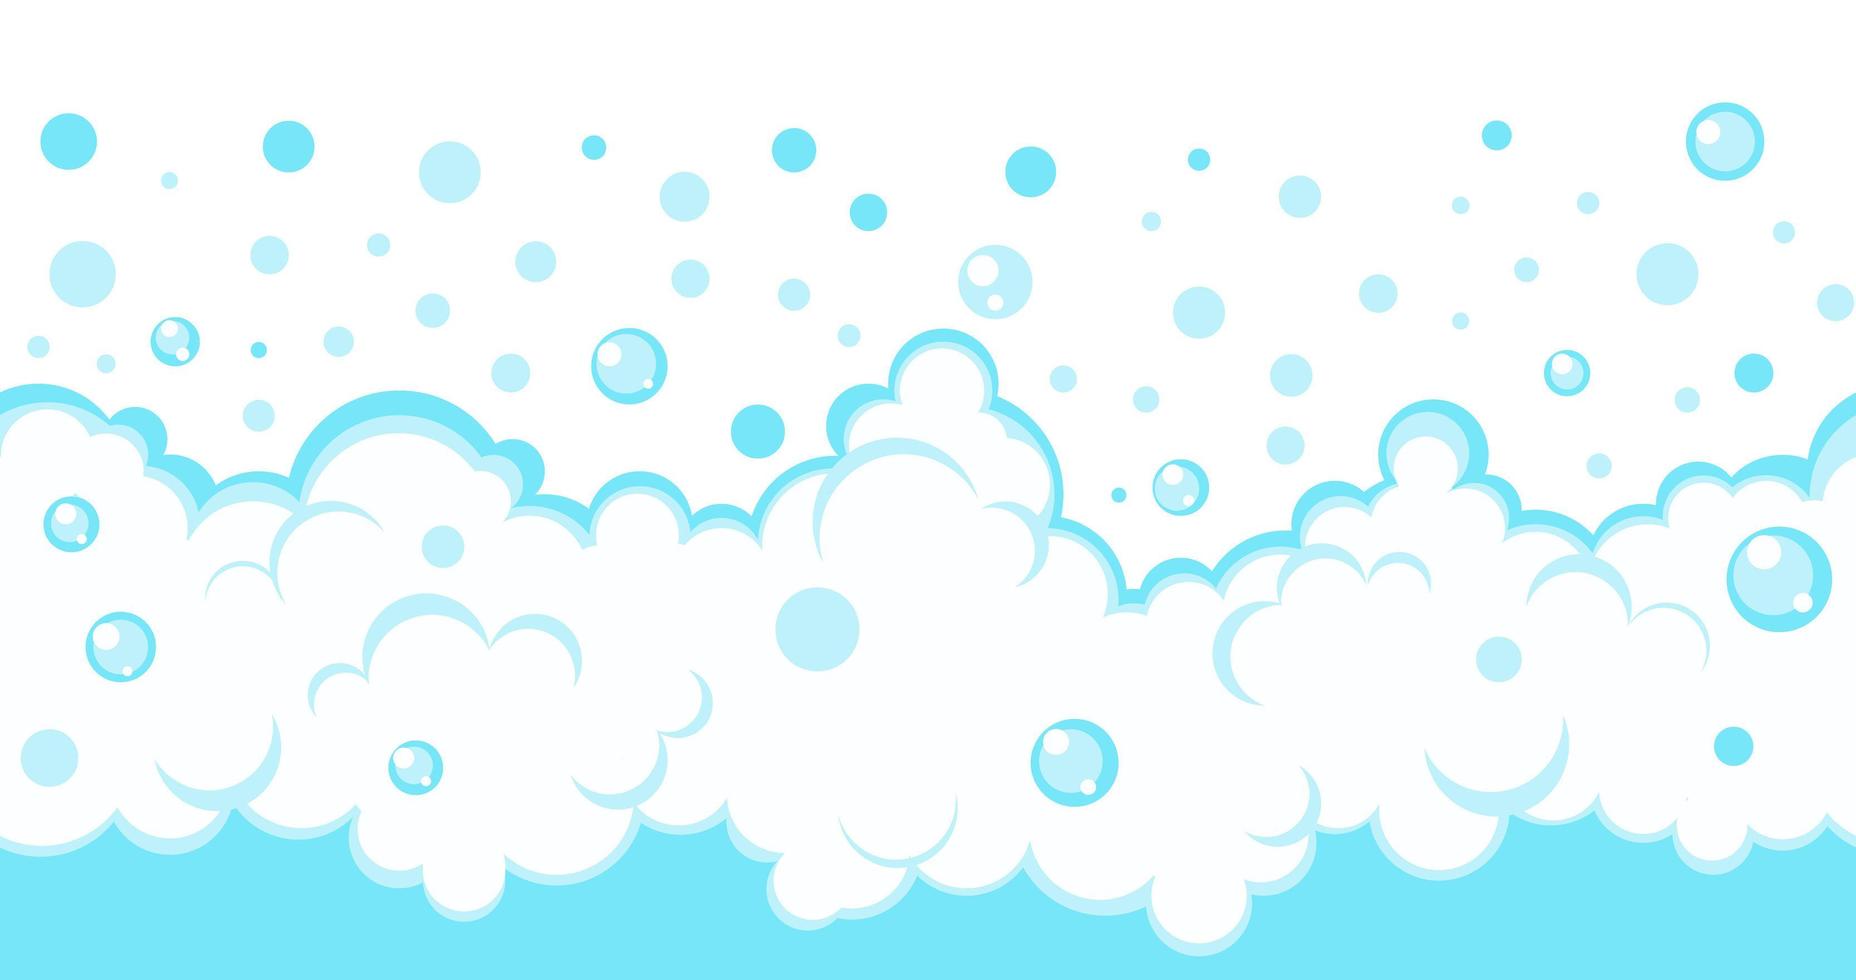 bordure de bulles de savon. cadre de mousse effervescente de dessin animé bleu. illustration vectorielle de fond pétillant. vecteur